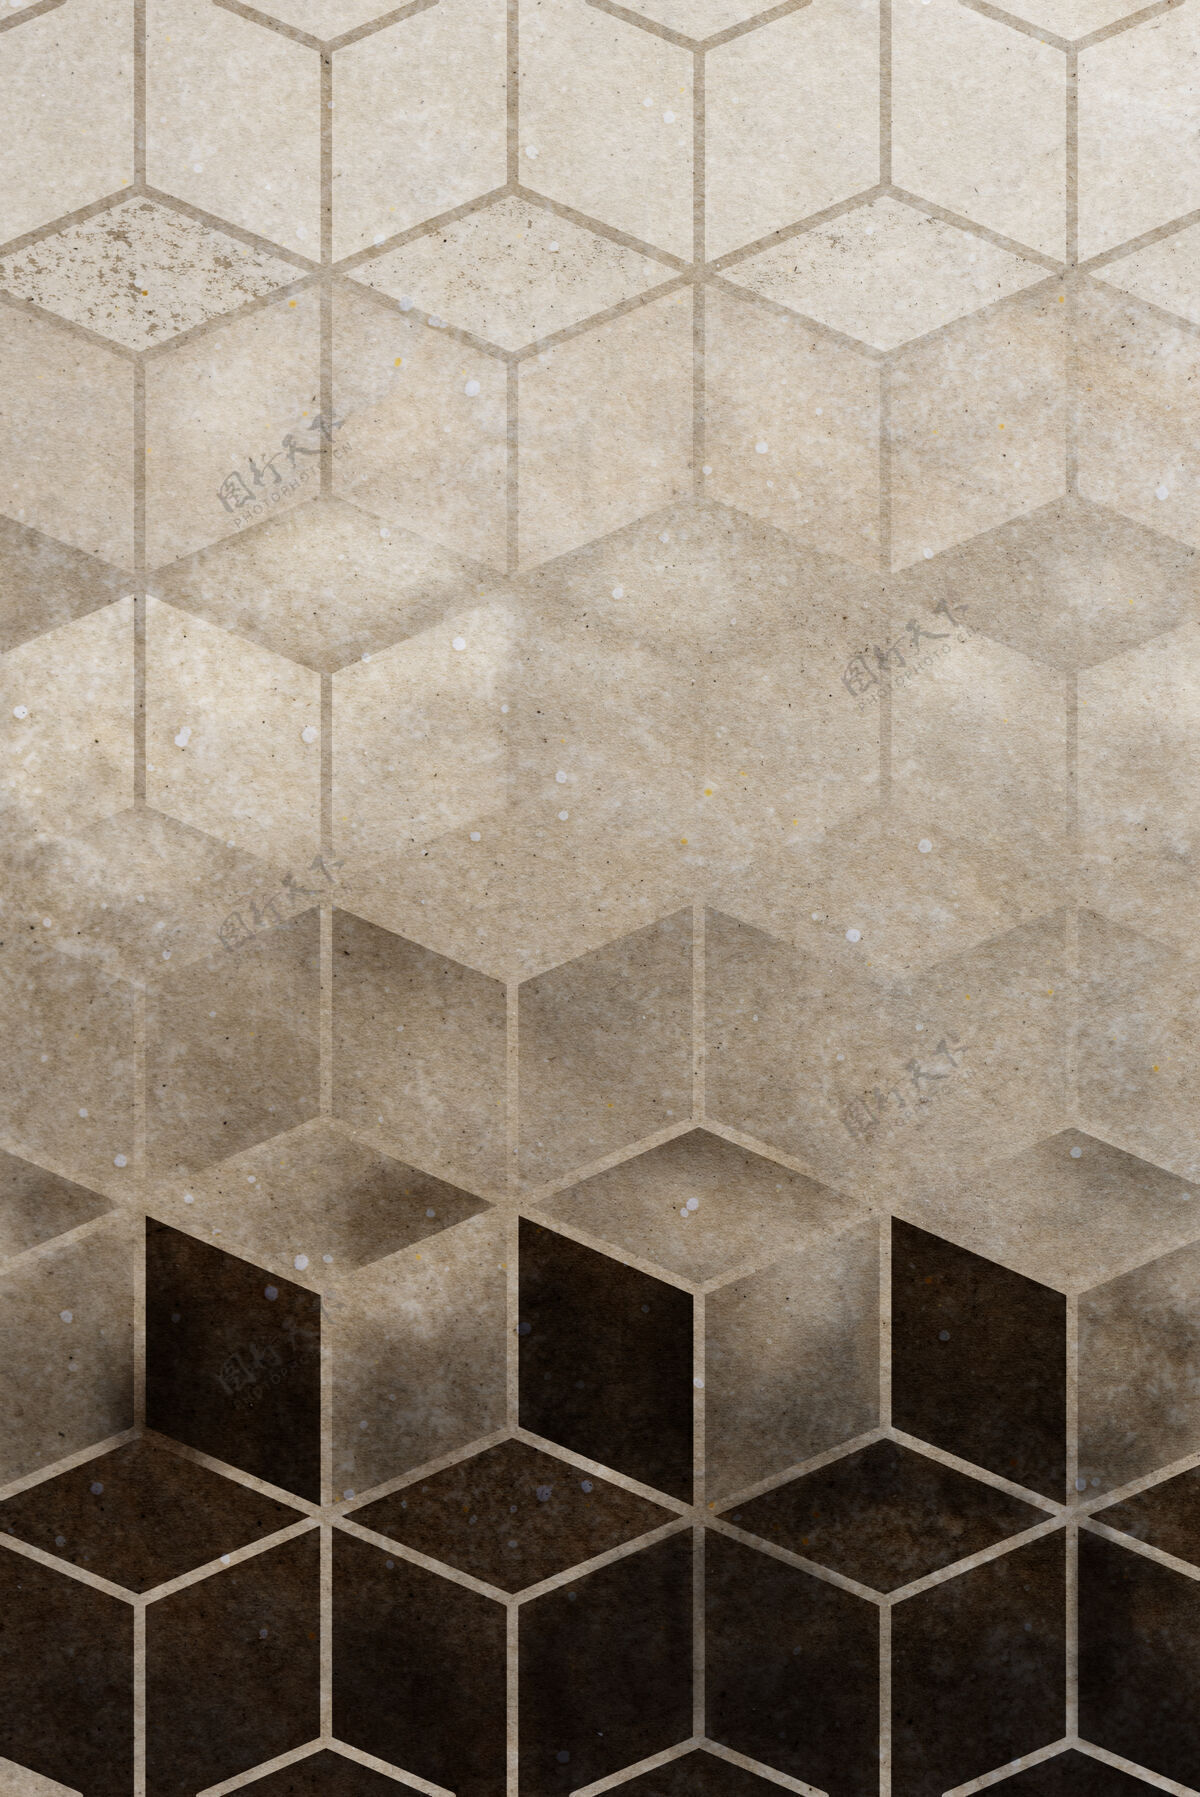 花式抽象棕色立方图案花岗岩几何时尚